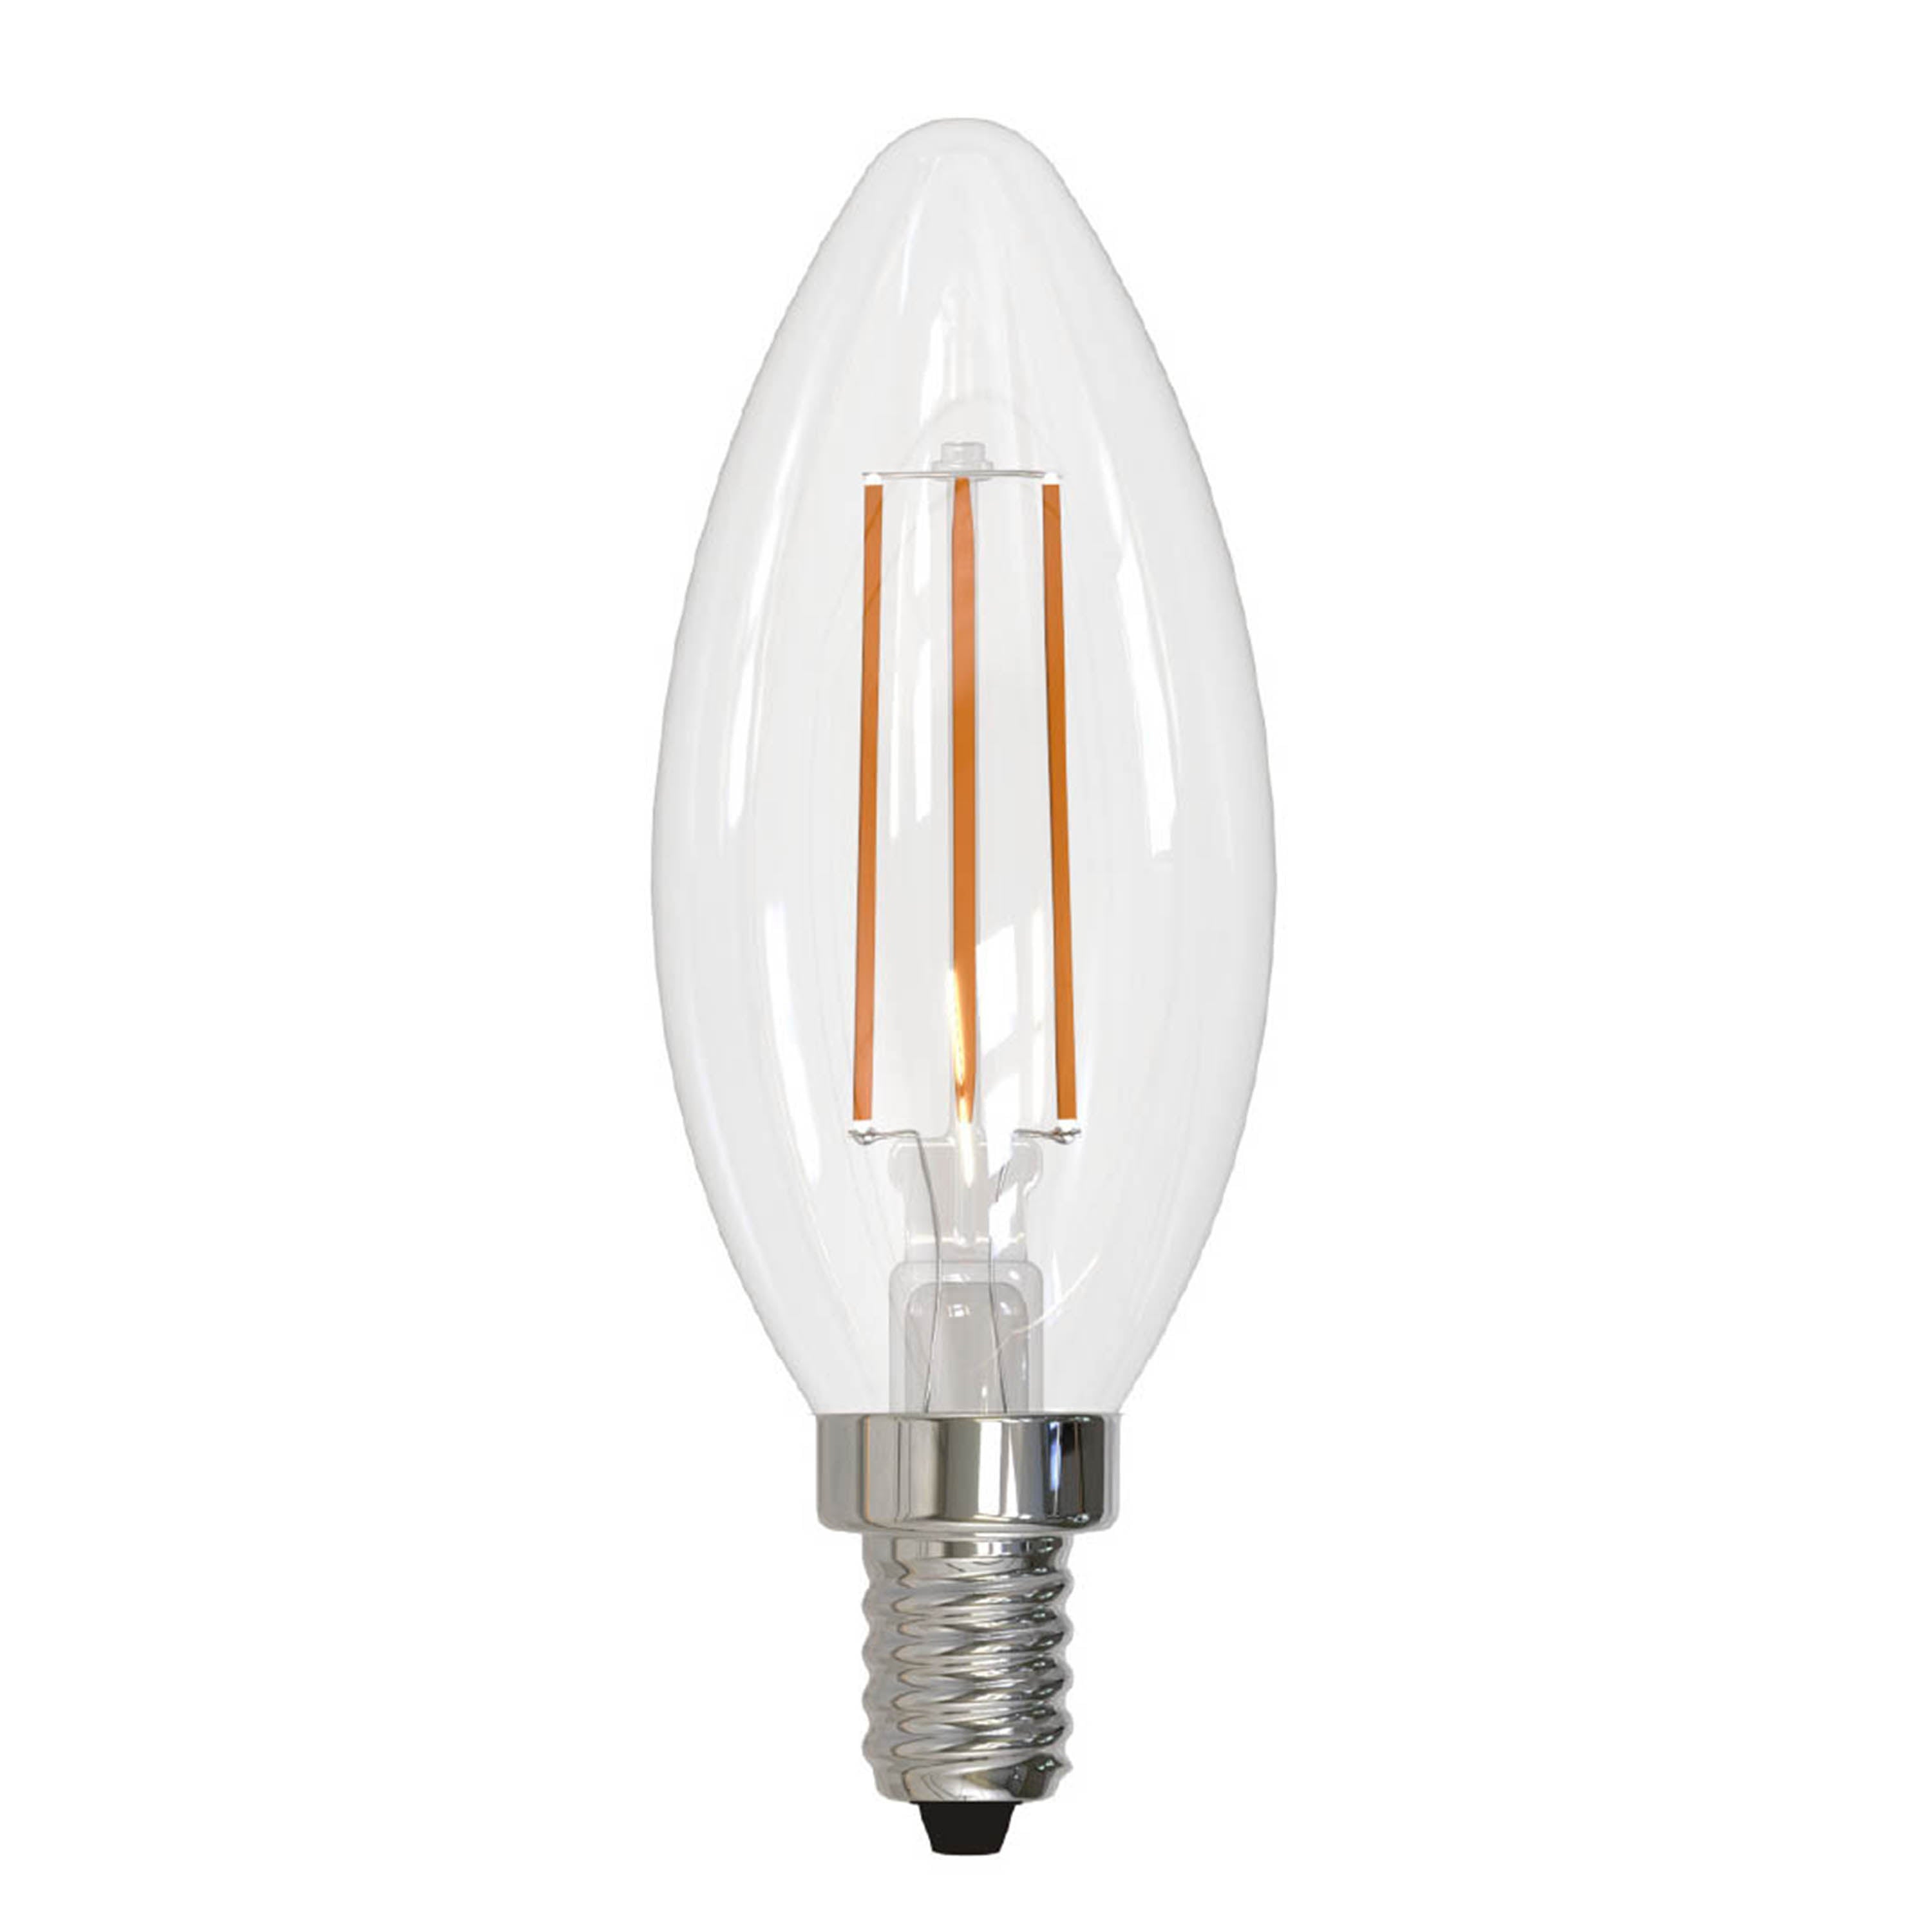 Bulbrite LED5B11/40K/FIL/E12/3 5W LED B11 4000K Filament Bulb E12 Base Clear Fully Compatible Dimming 120V (776931)